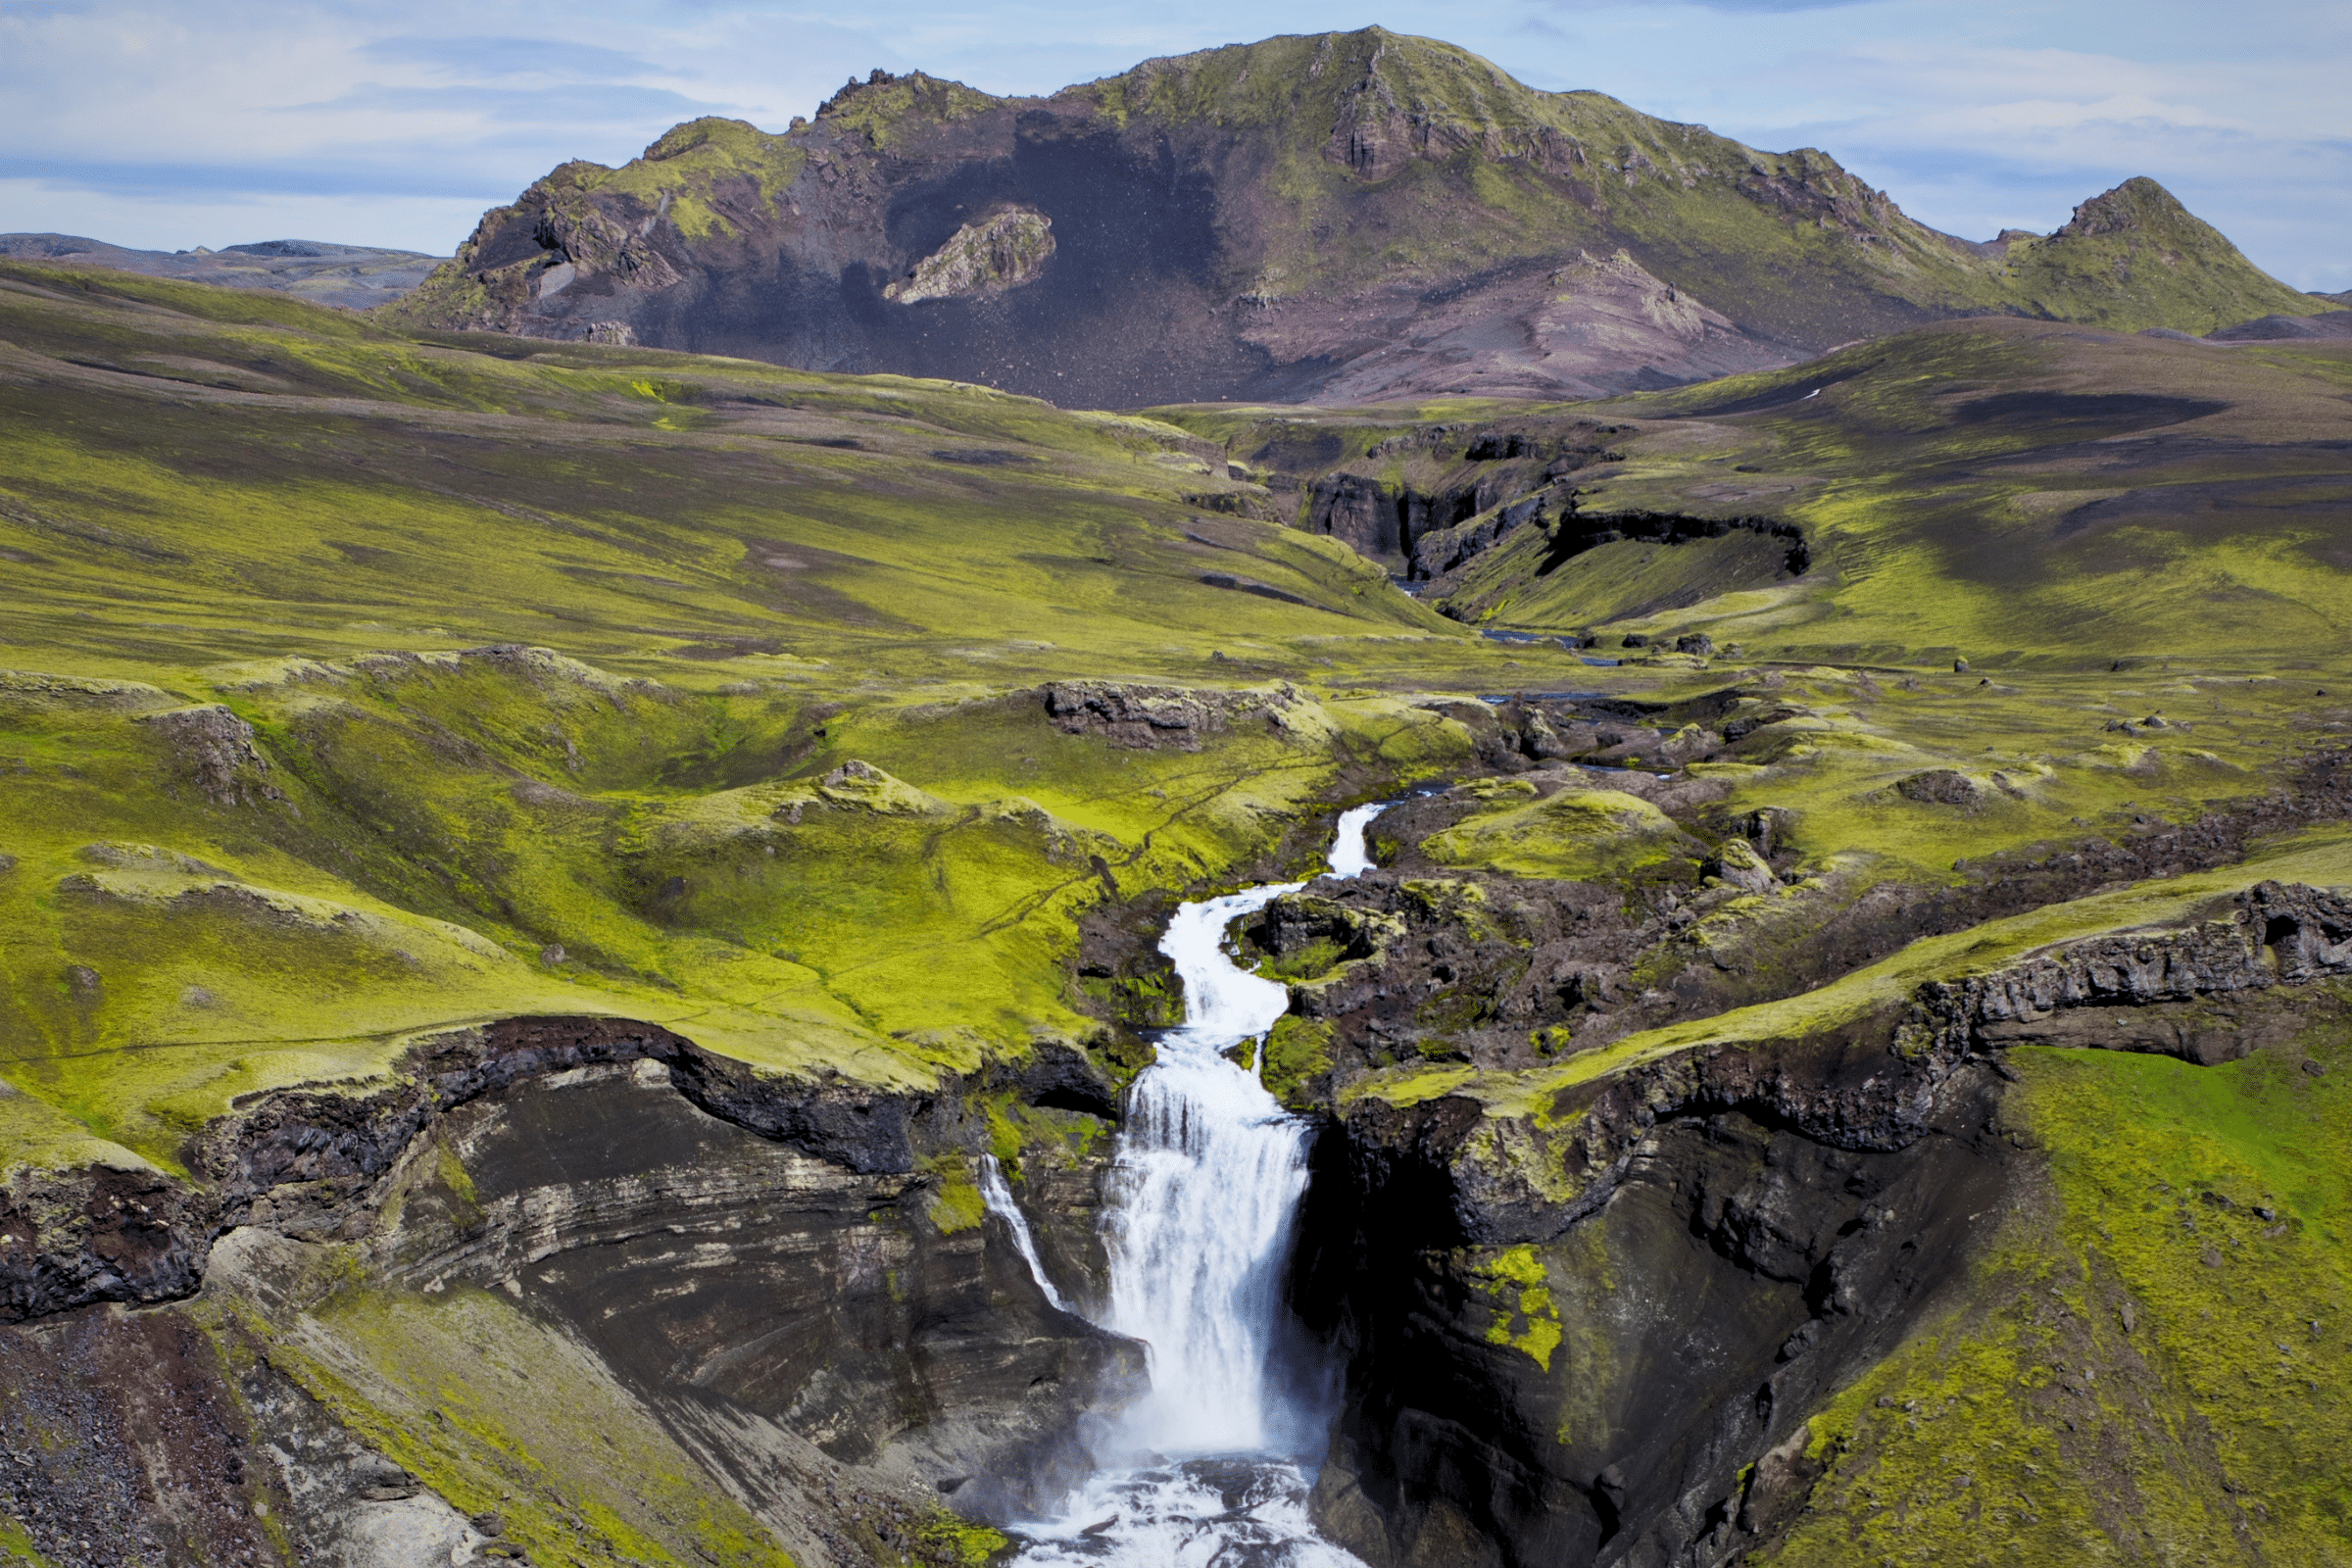 Cascade d'Ófærufoss et canyon d'Elgjá dans les hautes terres islandaises.